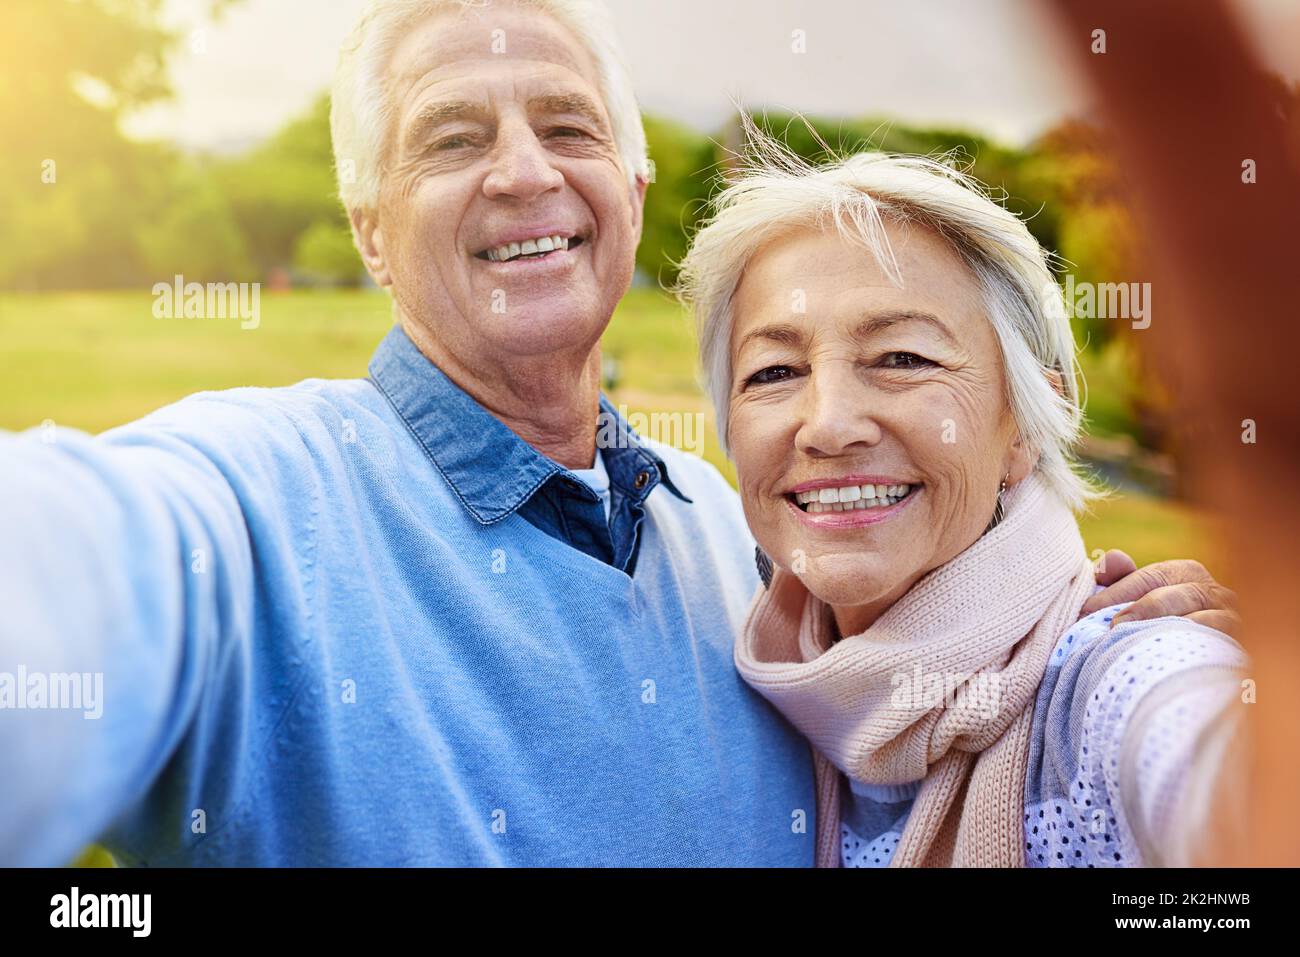 Lächeln Sie für die Kamera. Porträt eines älteren Paares, das zusammen in einem Park ein Foto gemacht hat. Stockfoto